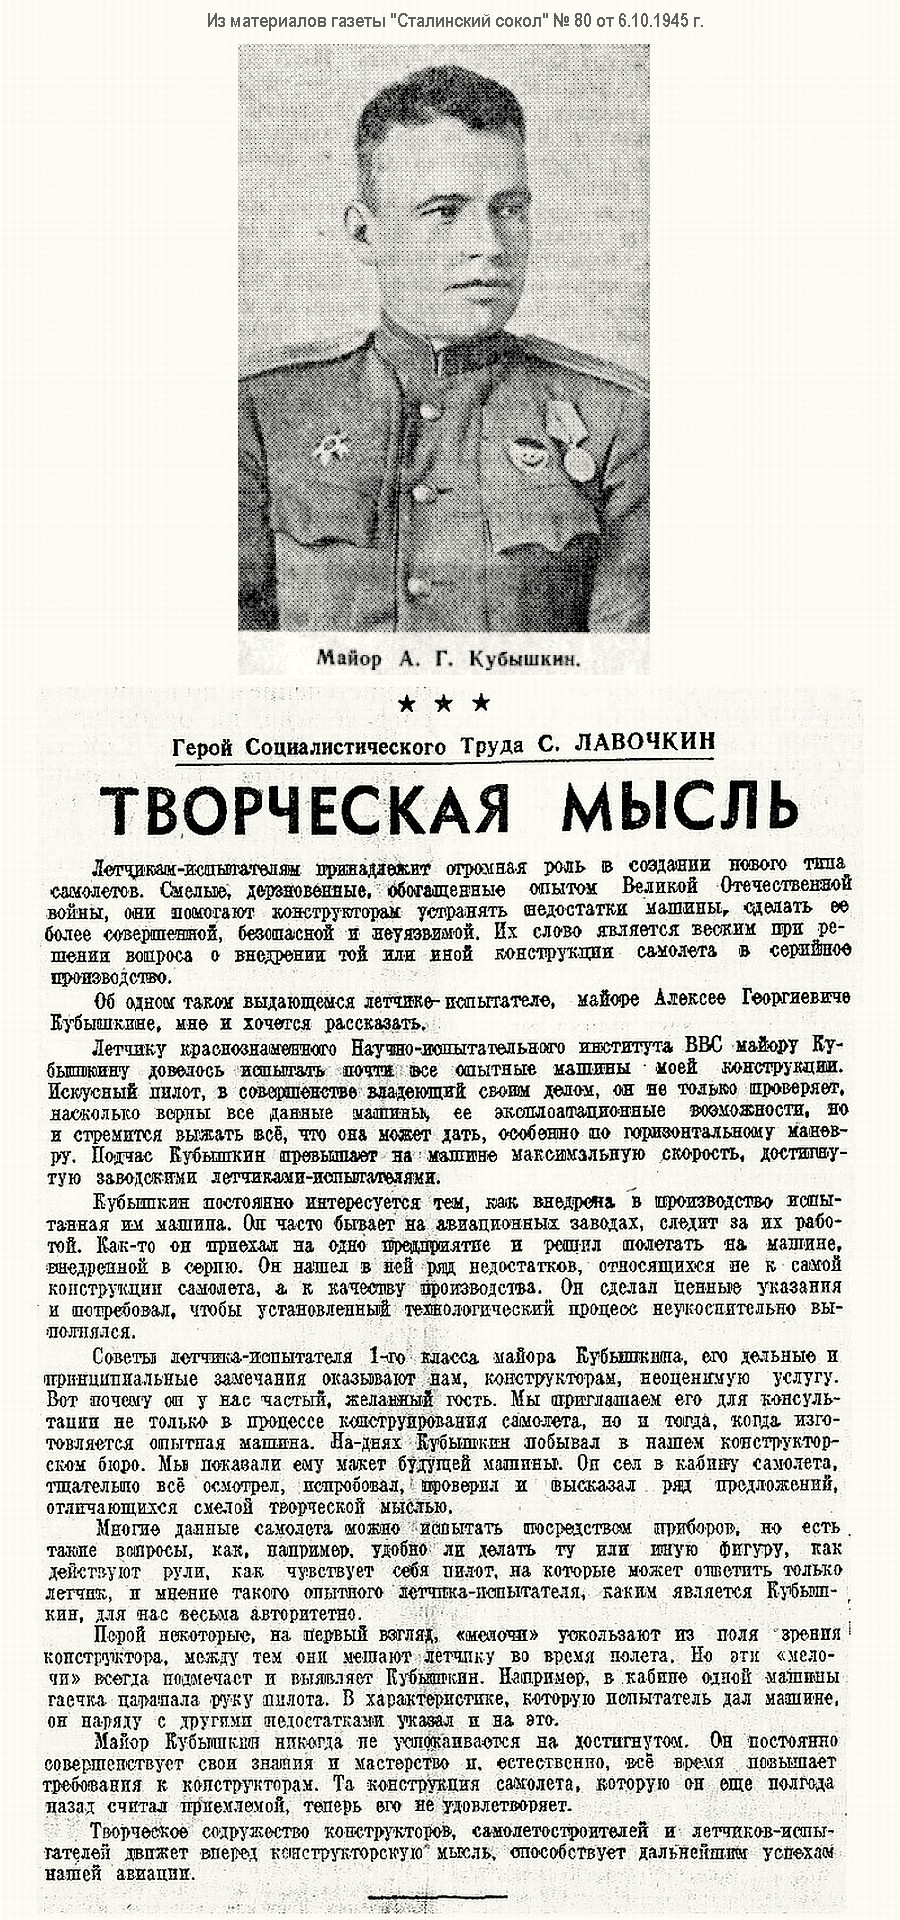 Из материалов послевоенных лет о А. Г. Кубышкине